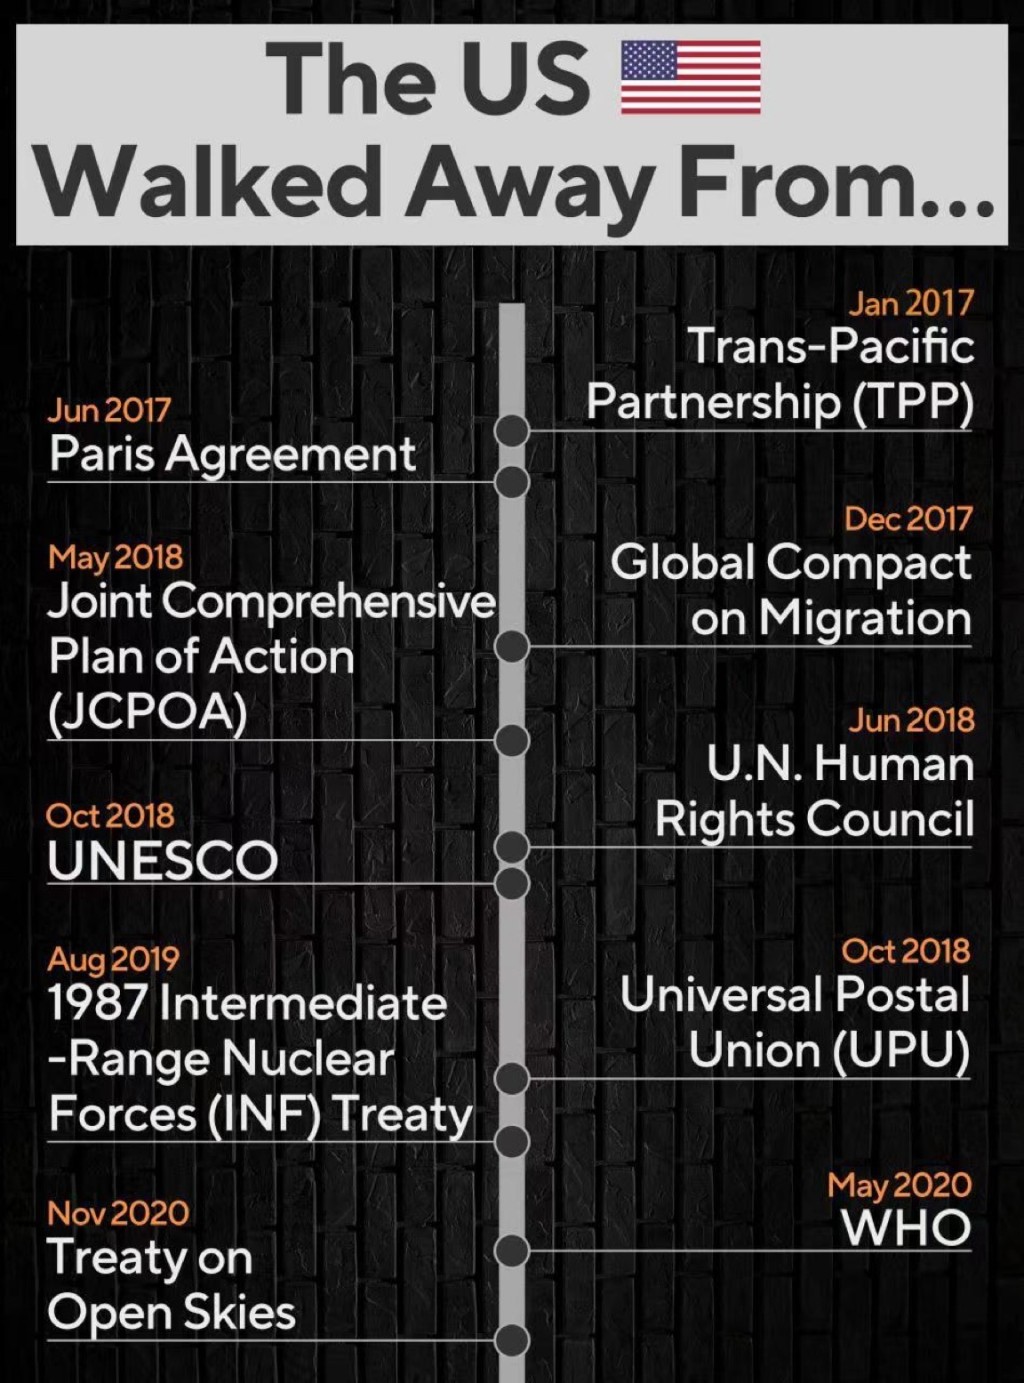 美国过去数年退出多个国际组织及协定。